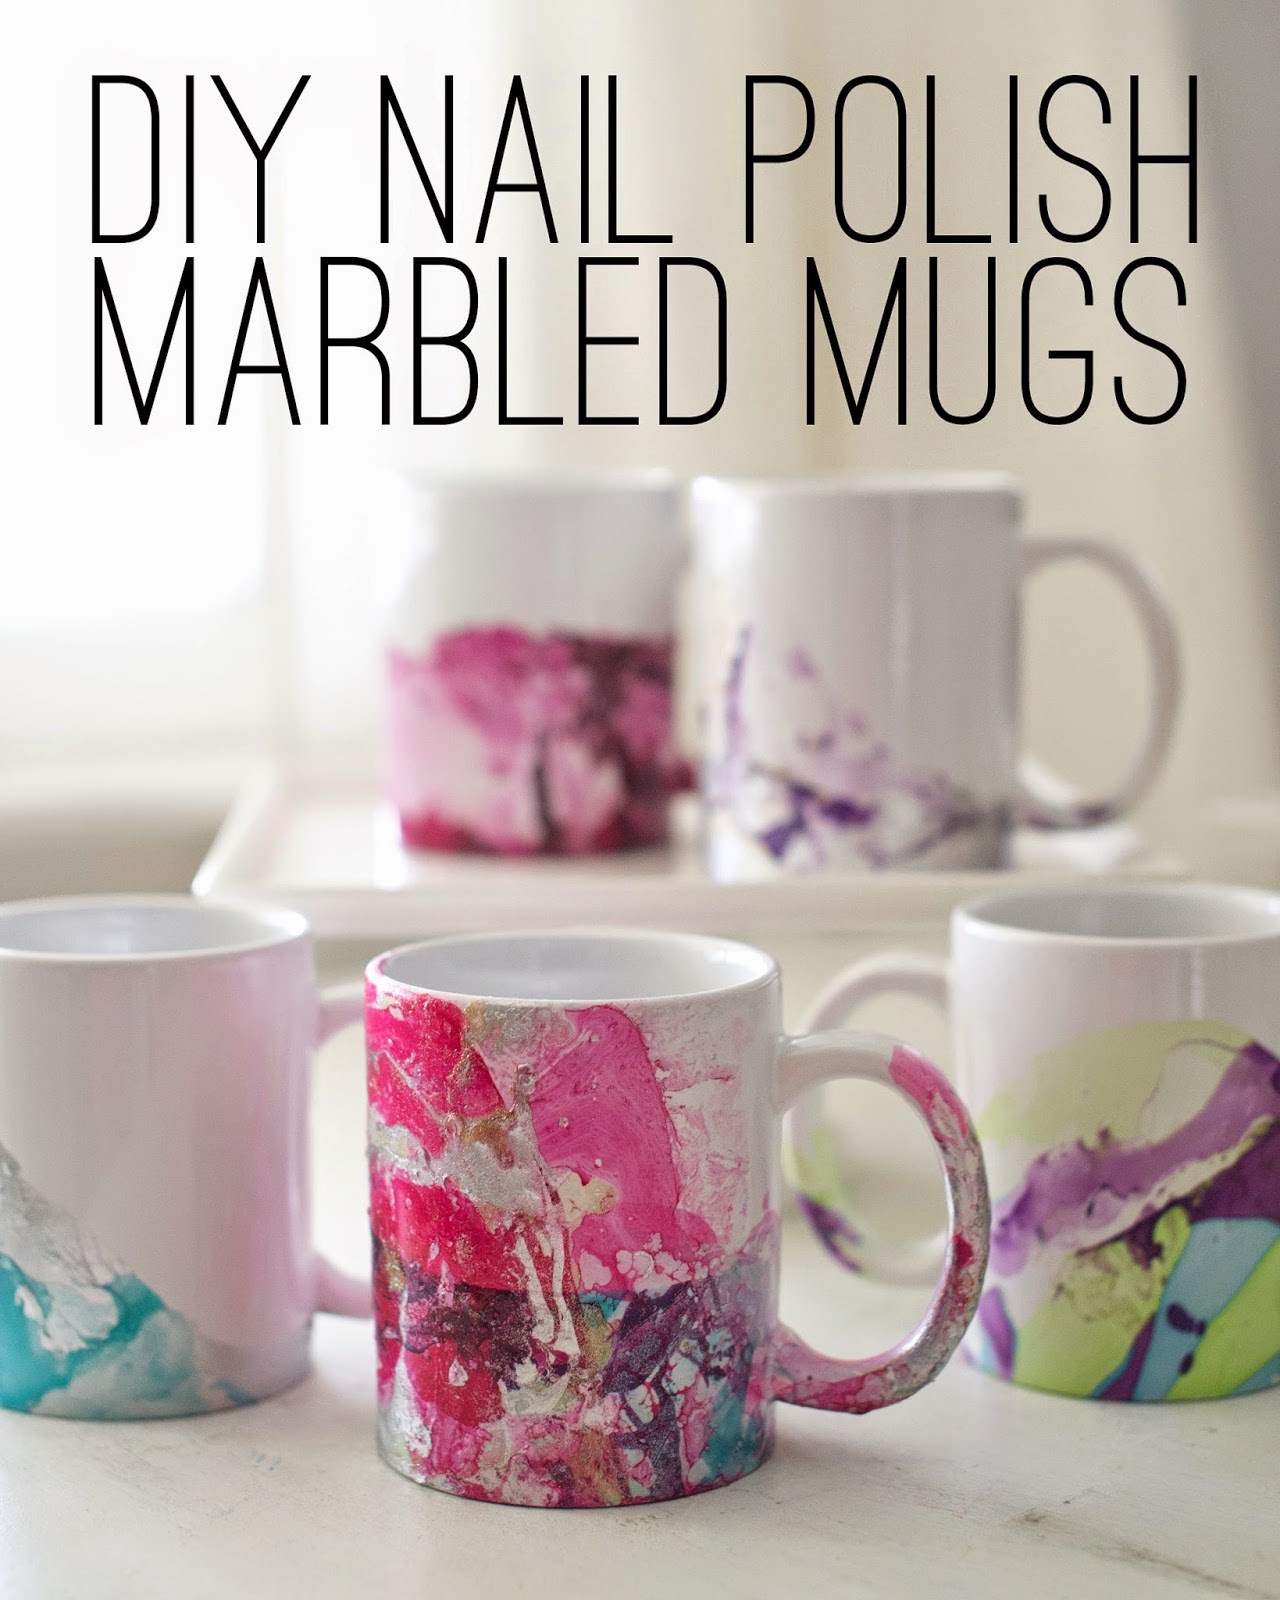 Nail polish marbled mugs